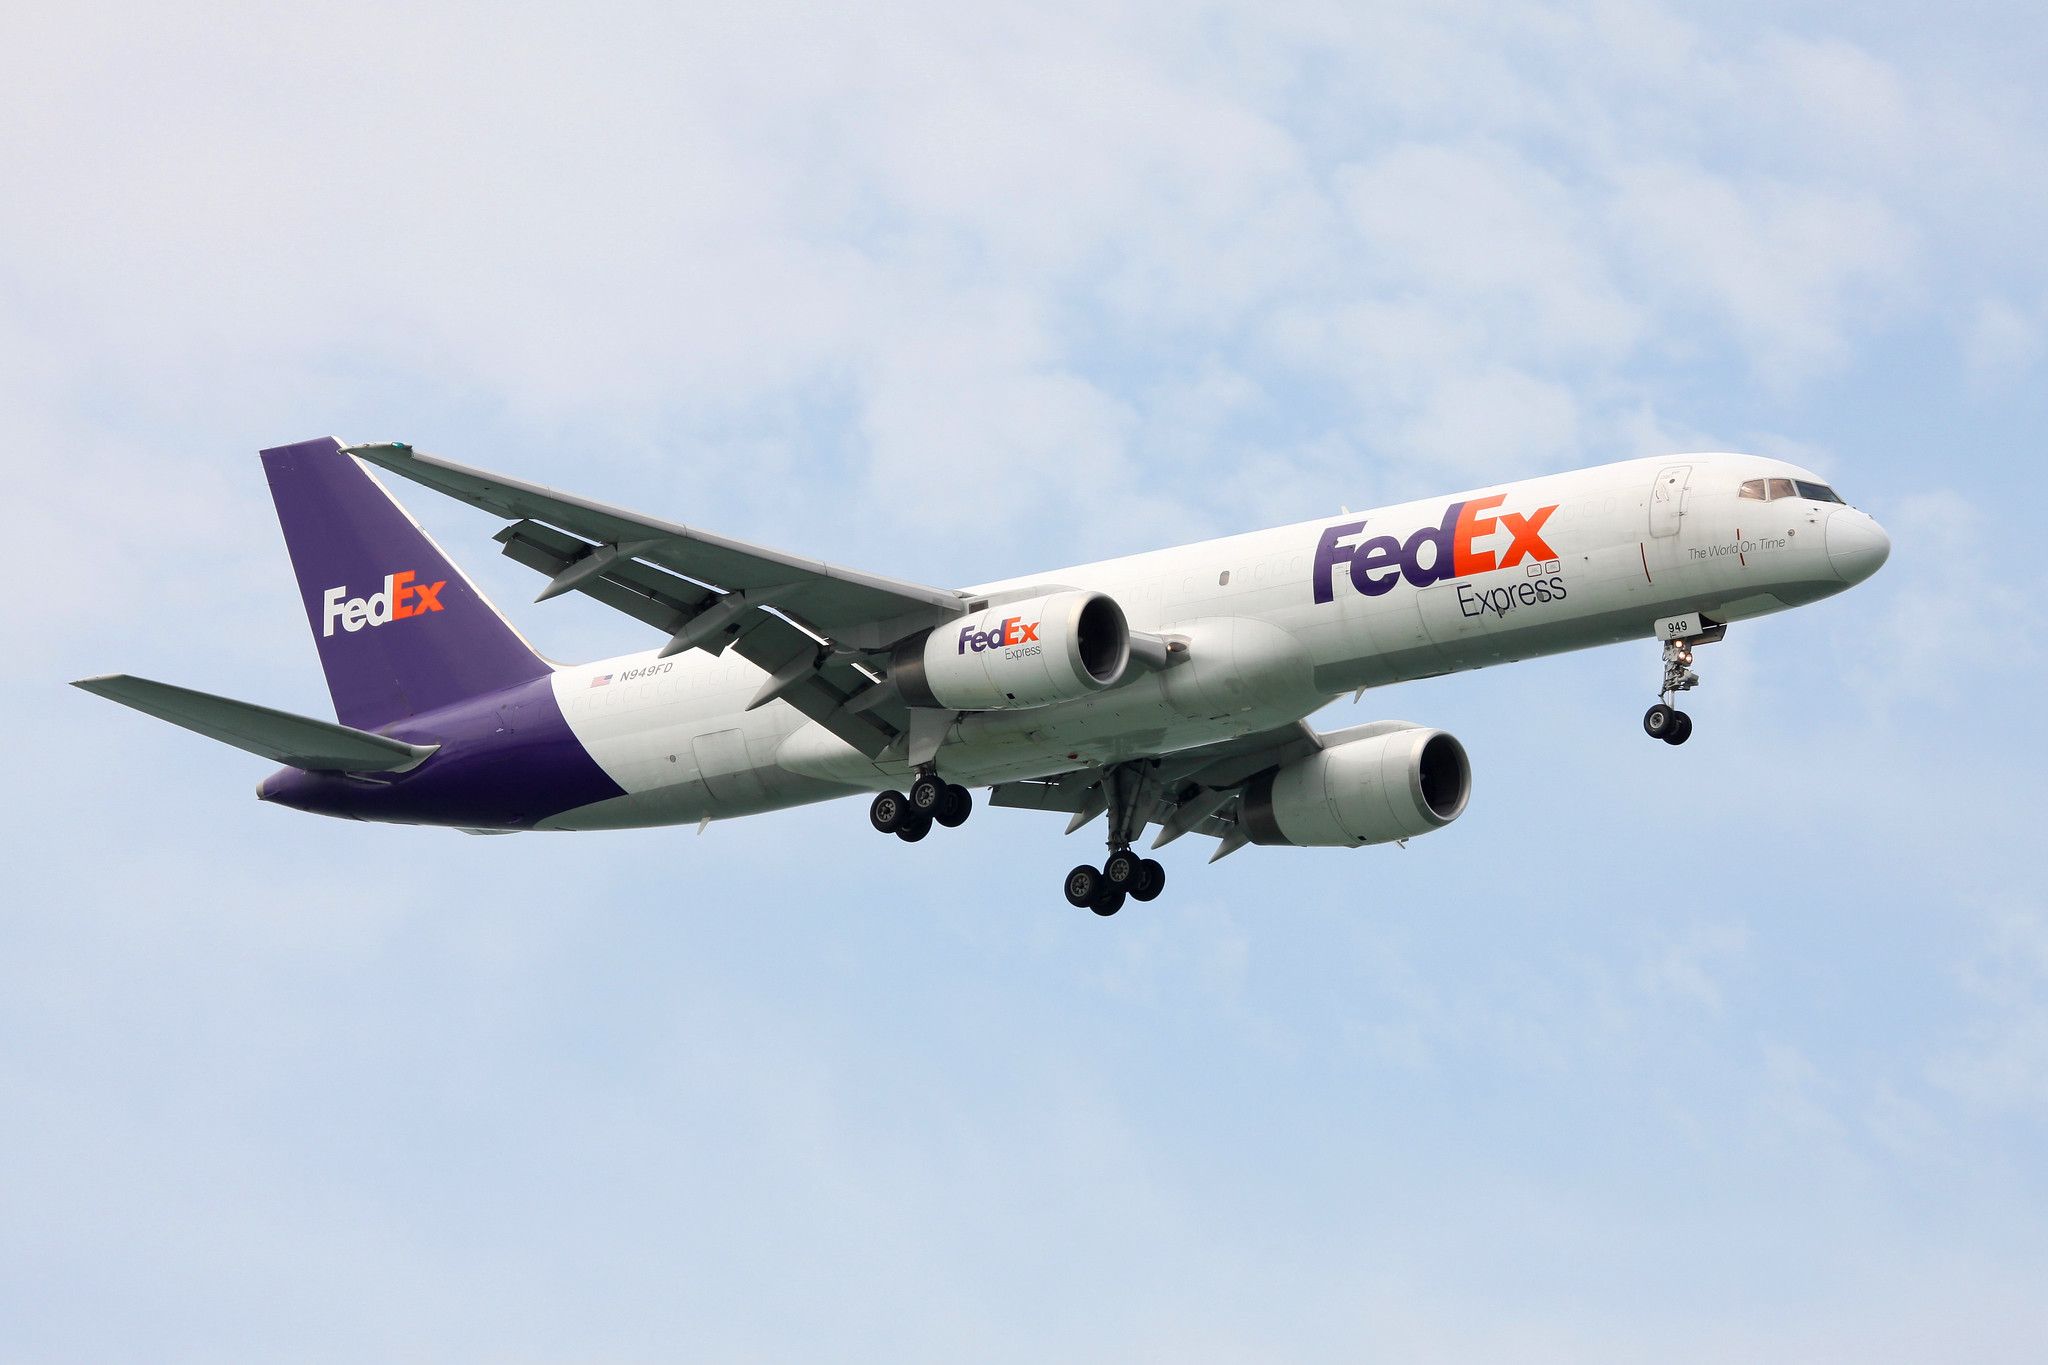 ex-british airways boeing 757 now in use with FedEx